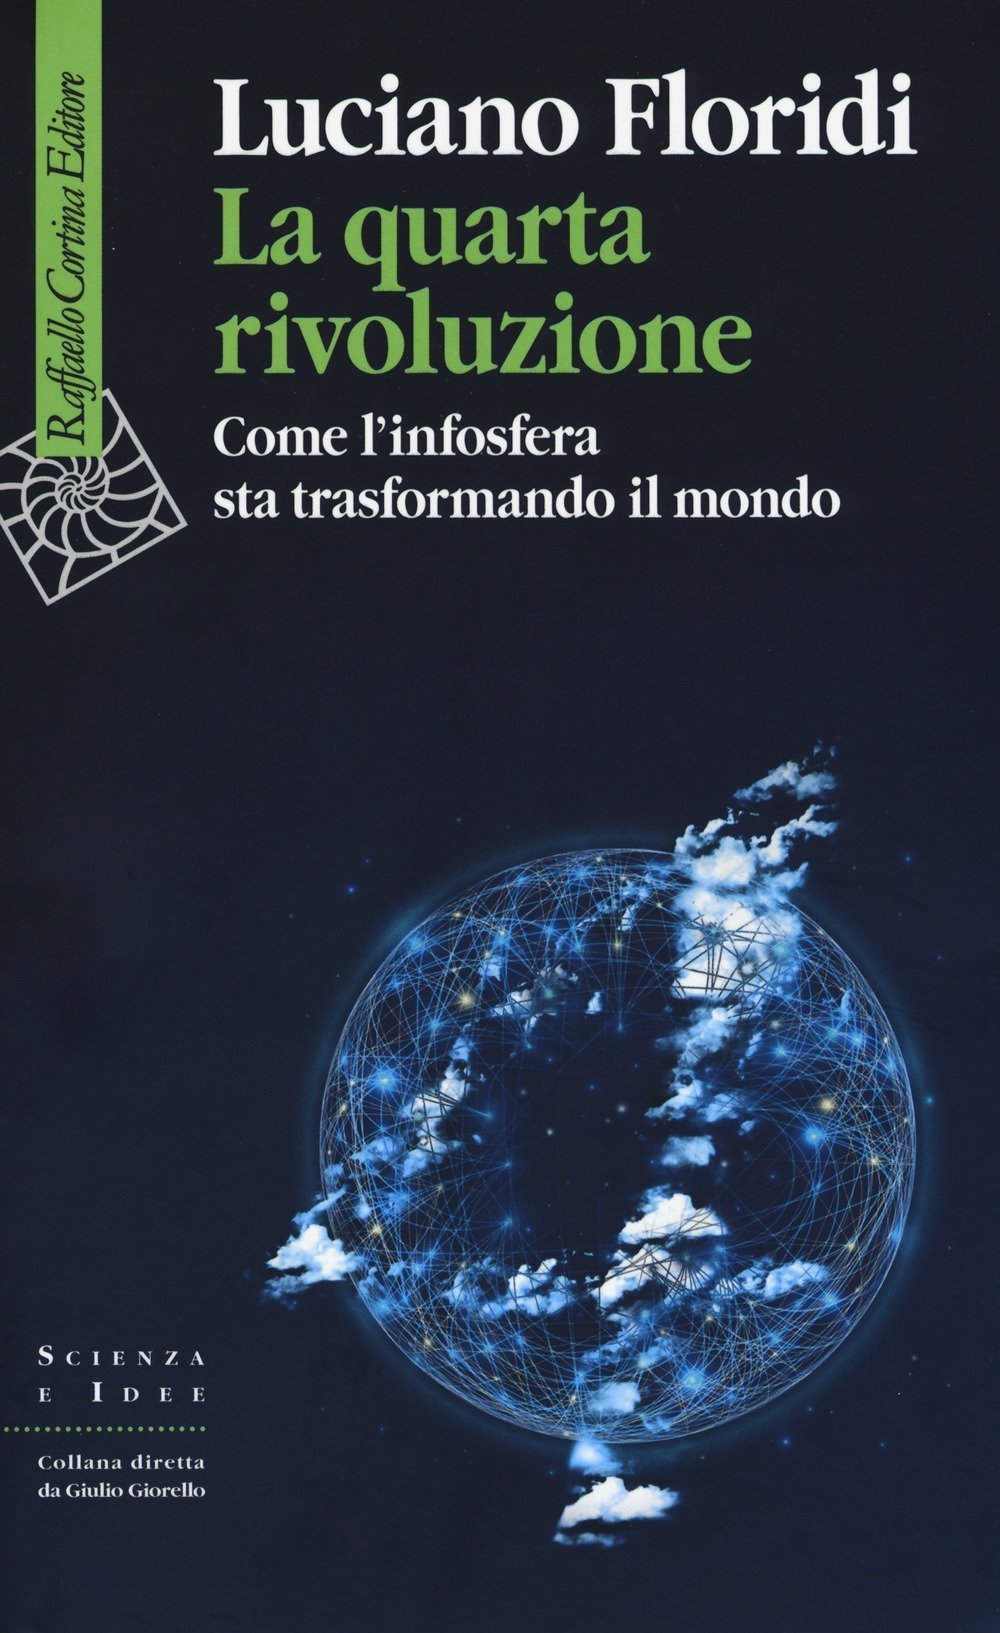 Luciano Floridi – La quarta rivoluzione. Come l'infosfera sta trasformando il mondo (Raffaello Cortina, Milano 2017)